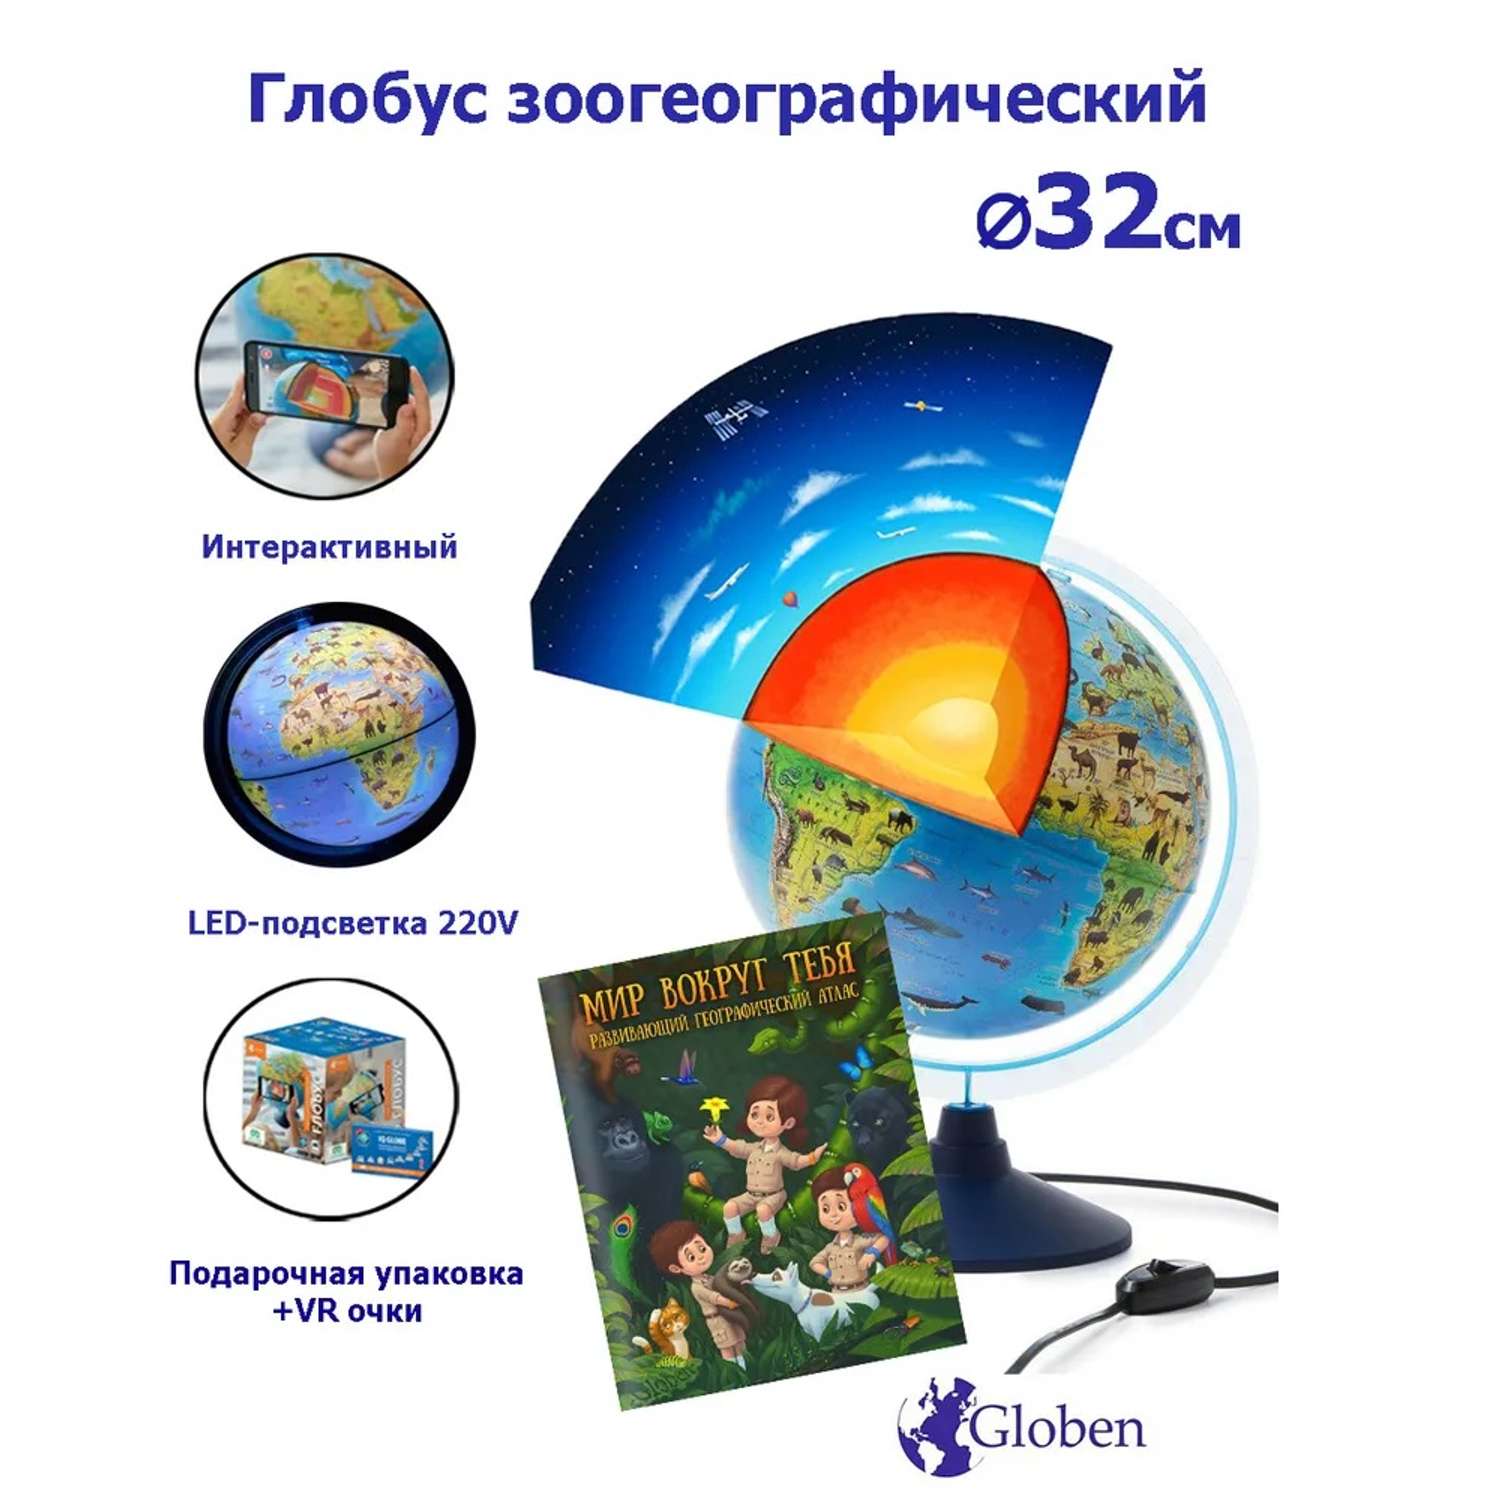 Интерактивный глобус Globen Зоогеографический детский 32см с LED-подсветкой + атлас и VR очки - фото 1